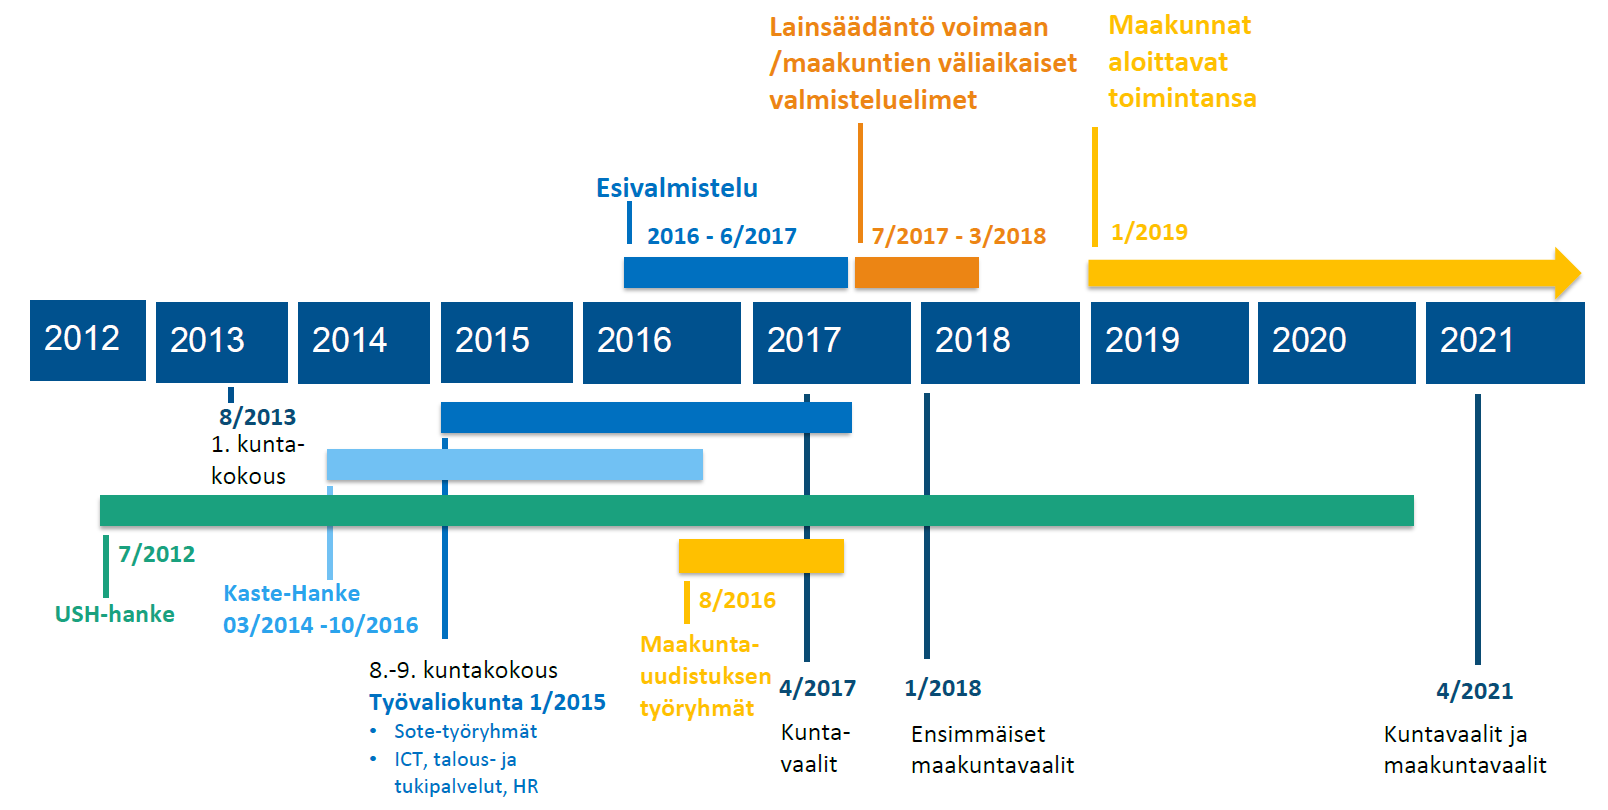 2. UUDISTUKSEN AIKATAULU Keski-Suomessa on jo useita vuosia haettu ratkaisumallia sosiaali- terveydenhuollon uuteen järjestämiseen tuottamiseen.